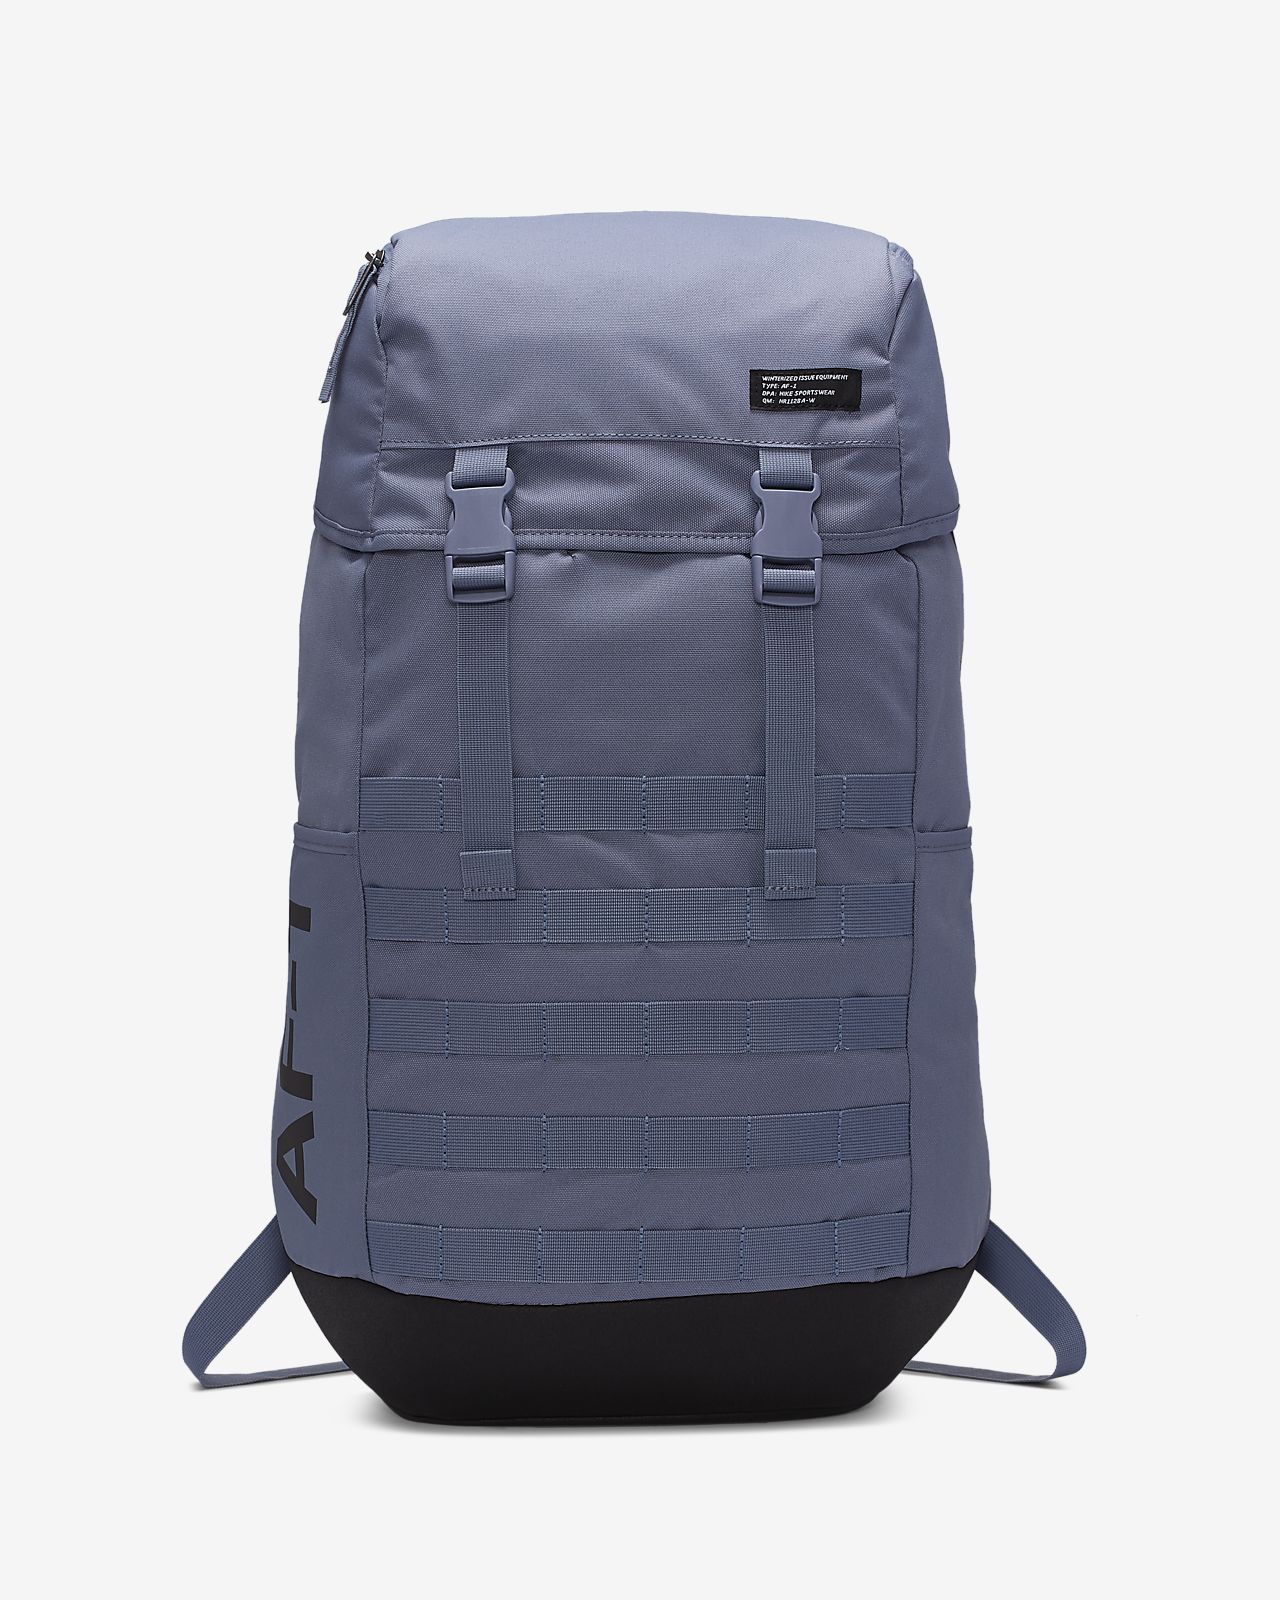 nike af1 backpack review